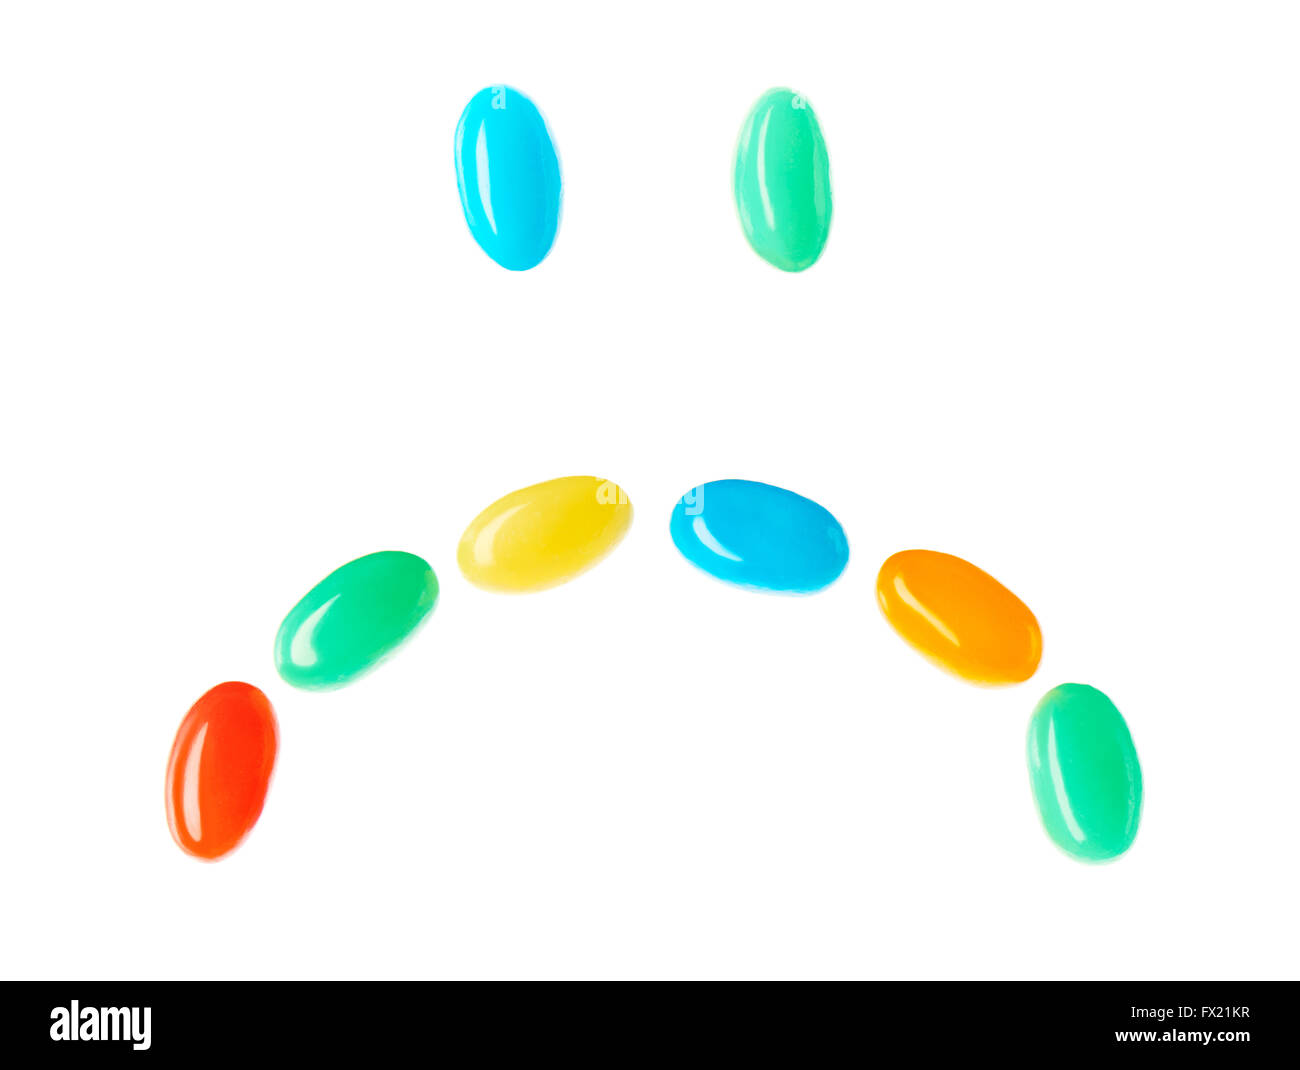 Traurig traurig Smiley gemacht von bunten Bonbons, die isoliert auf weißem Hintergrund Stockfoto